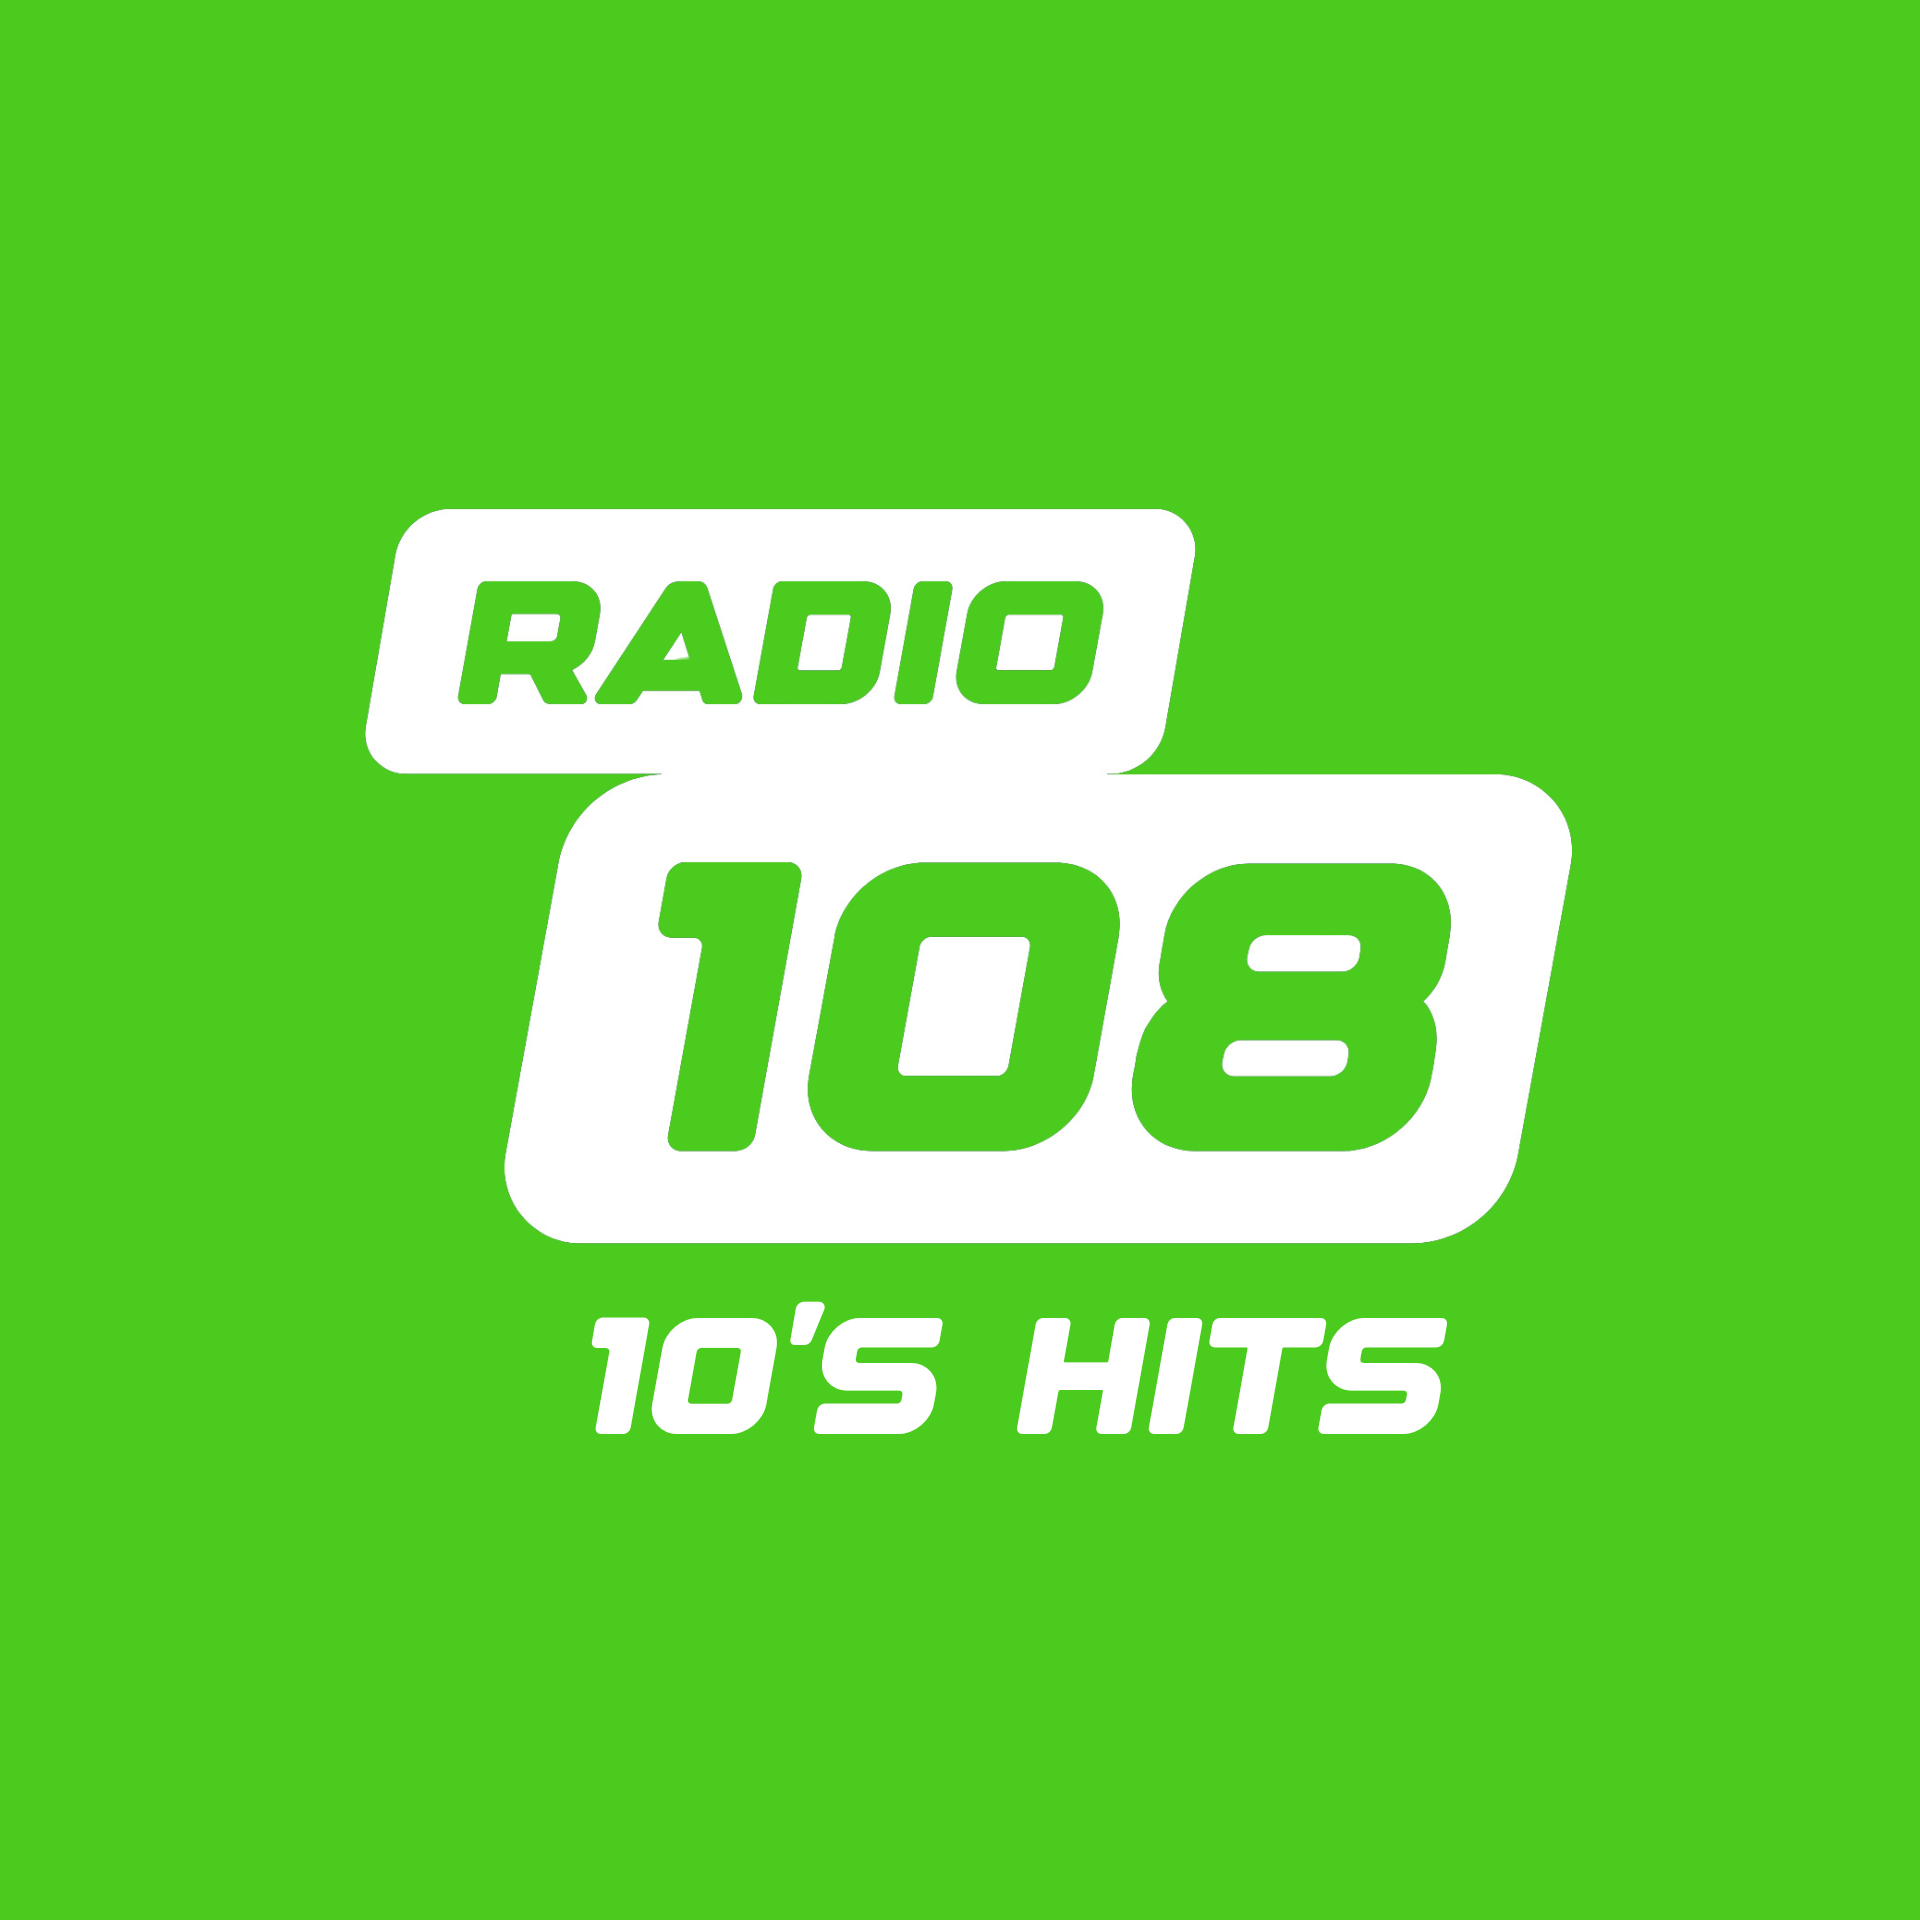 RADIO 108 - 10'S HITS